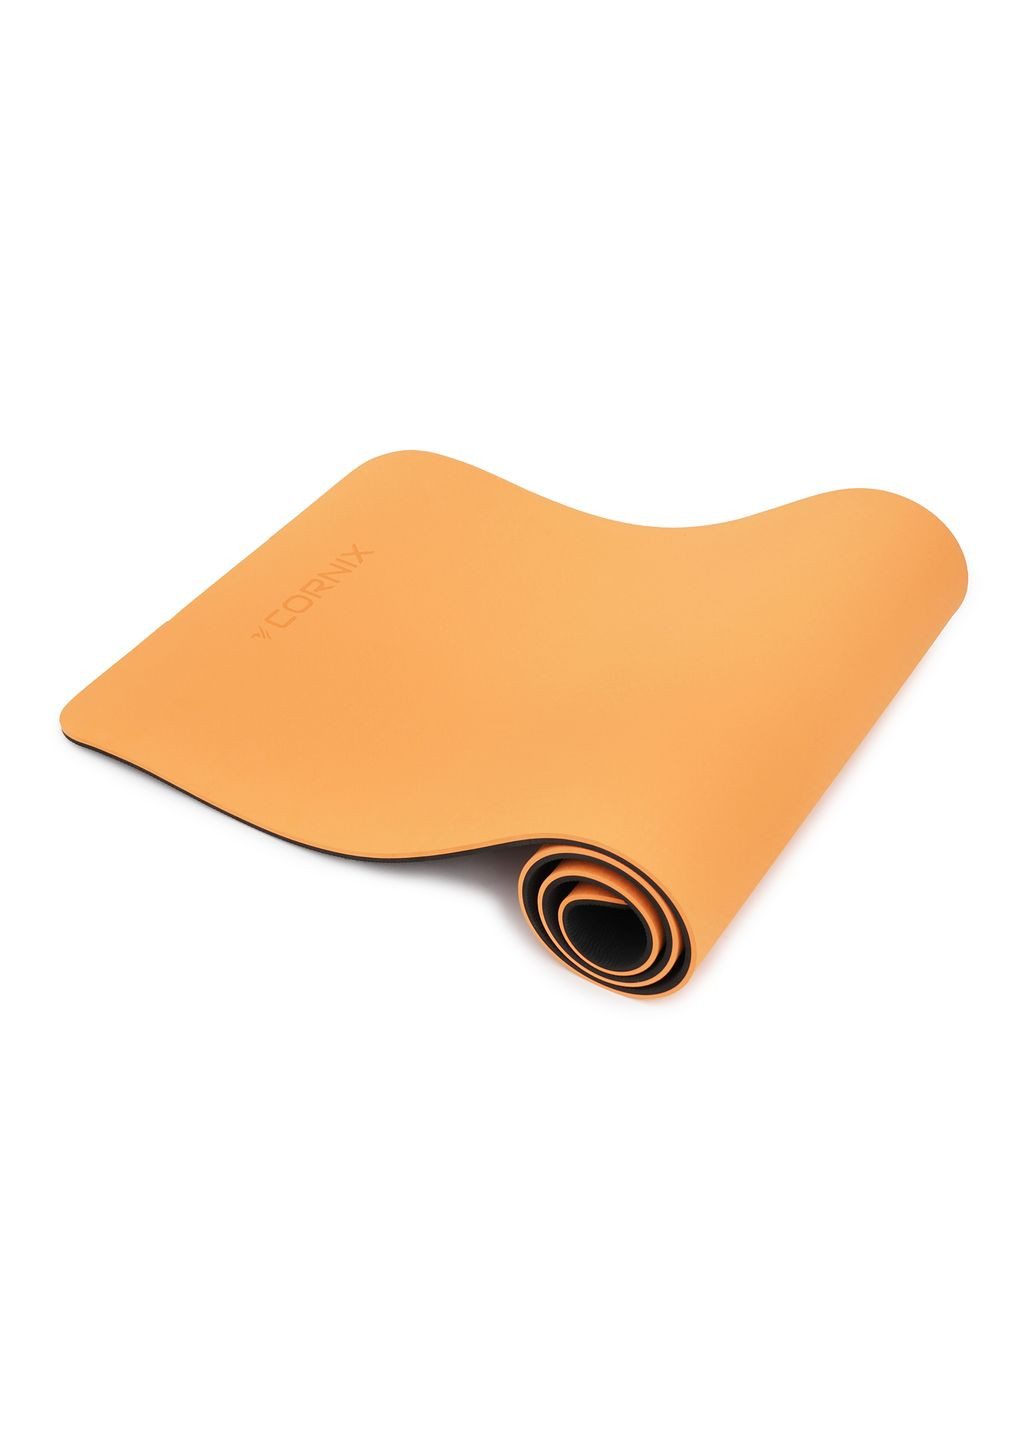 Коврик спортивный TPE 183 x 61 x 1 cм для йоги и фитнеса XR0091 Orange/Black Cornix xr-0091 (275654232)